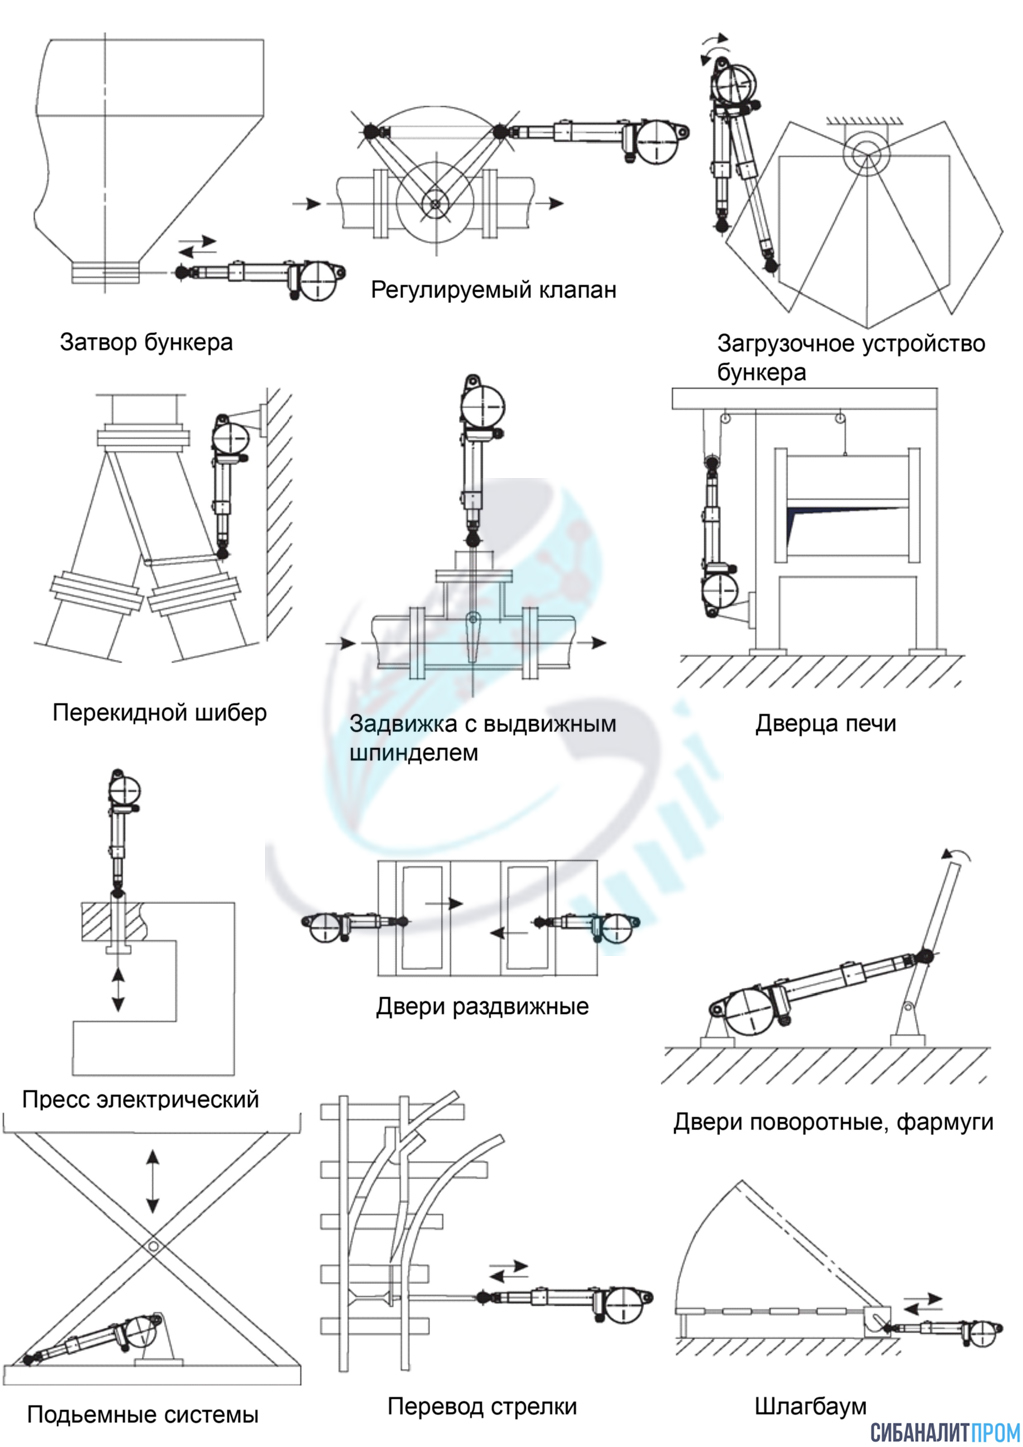 Схема применения привода ПМК-1 Сибаналитпром